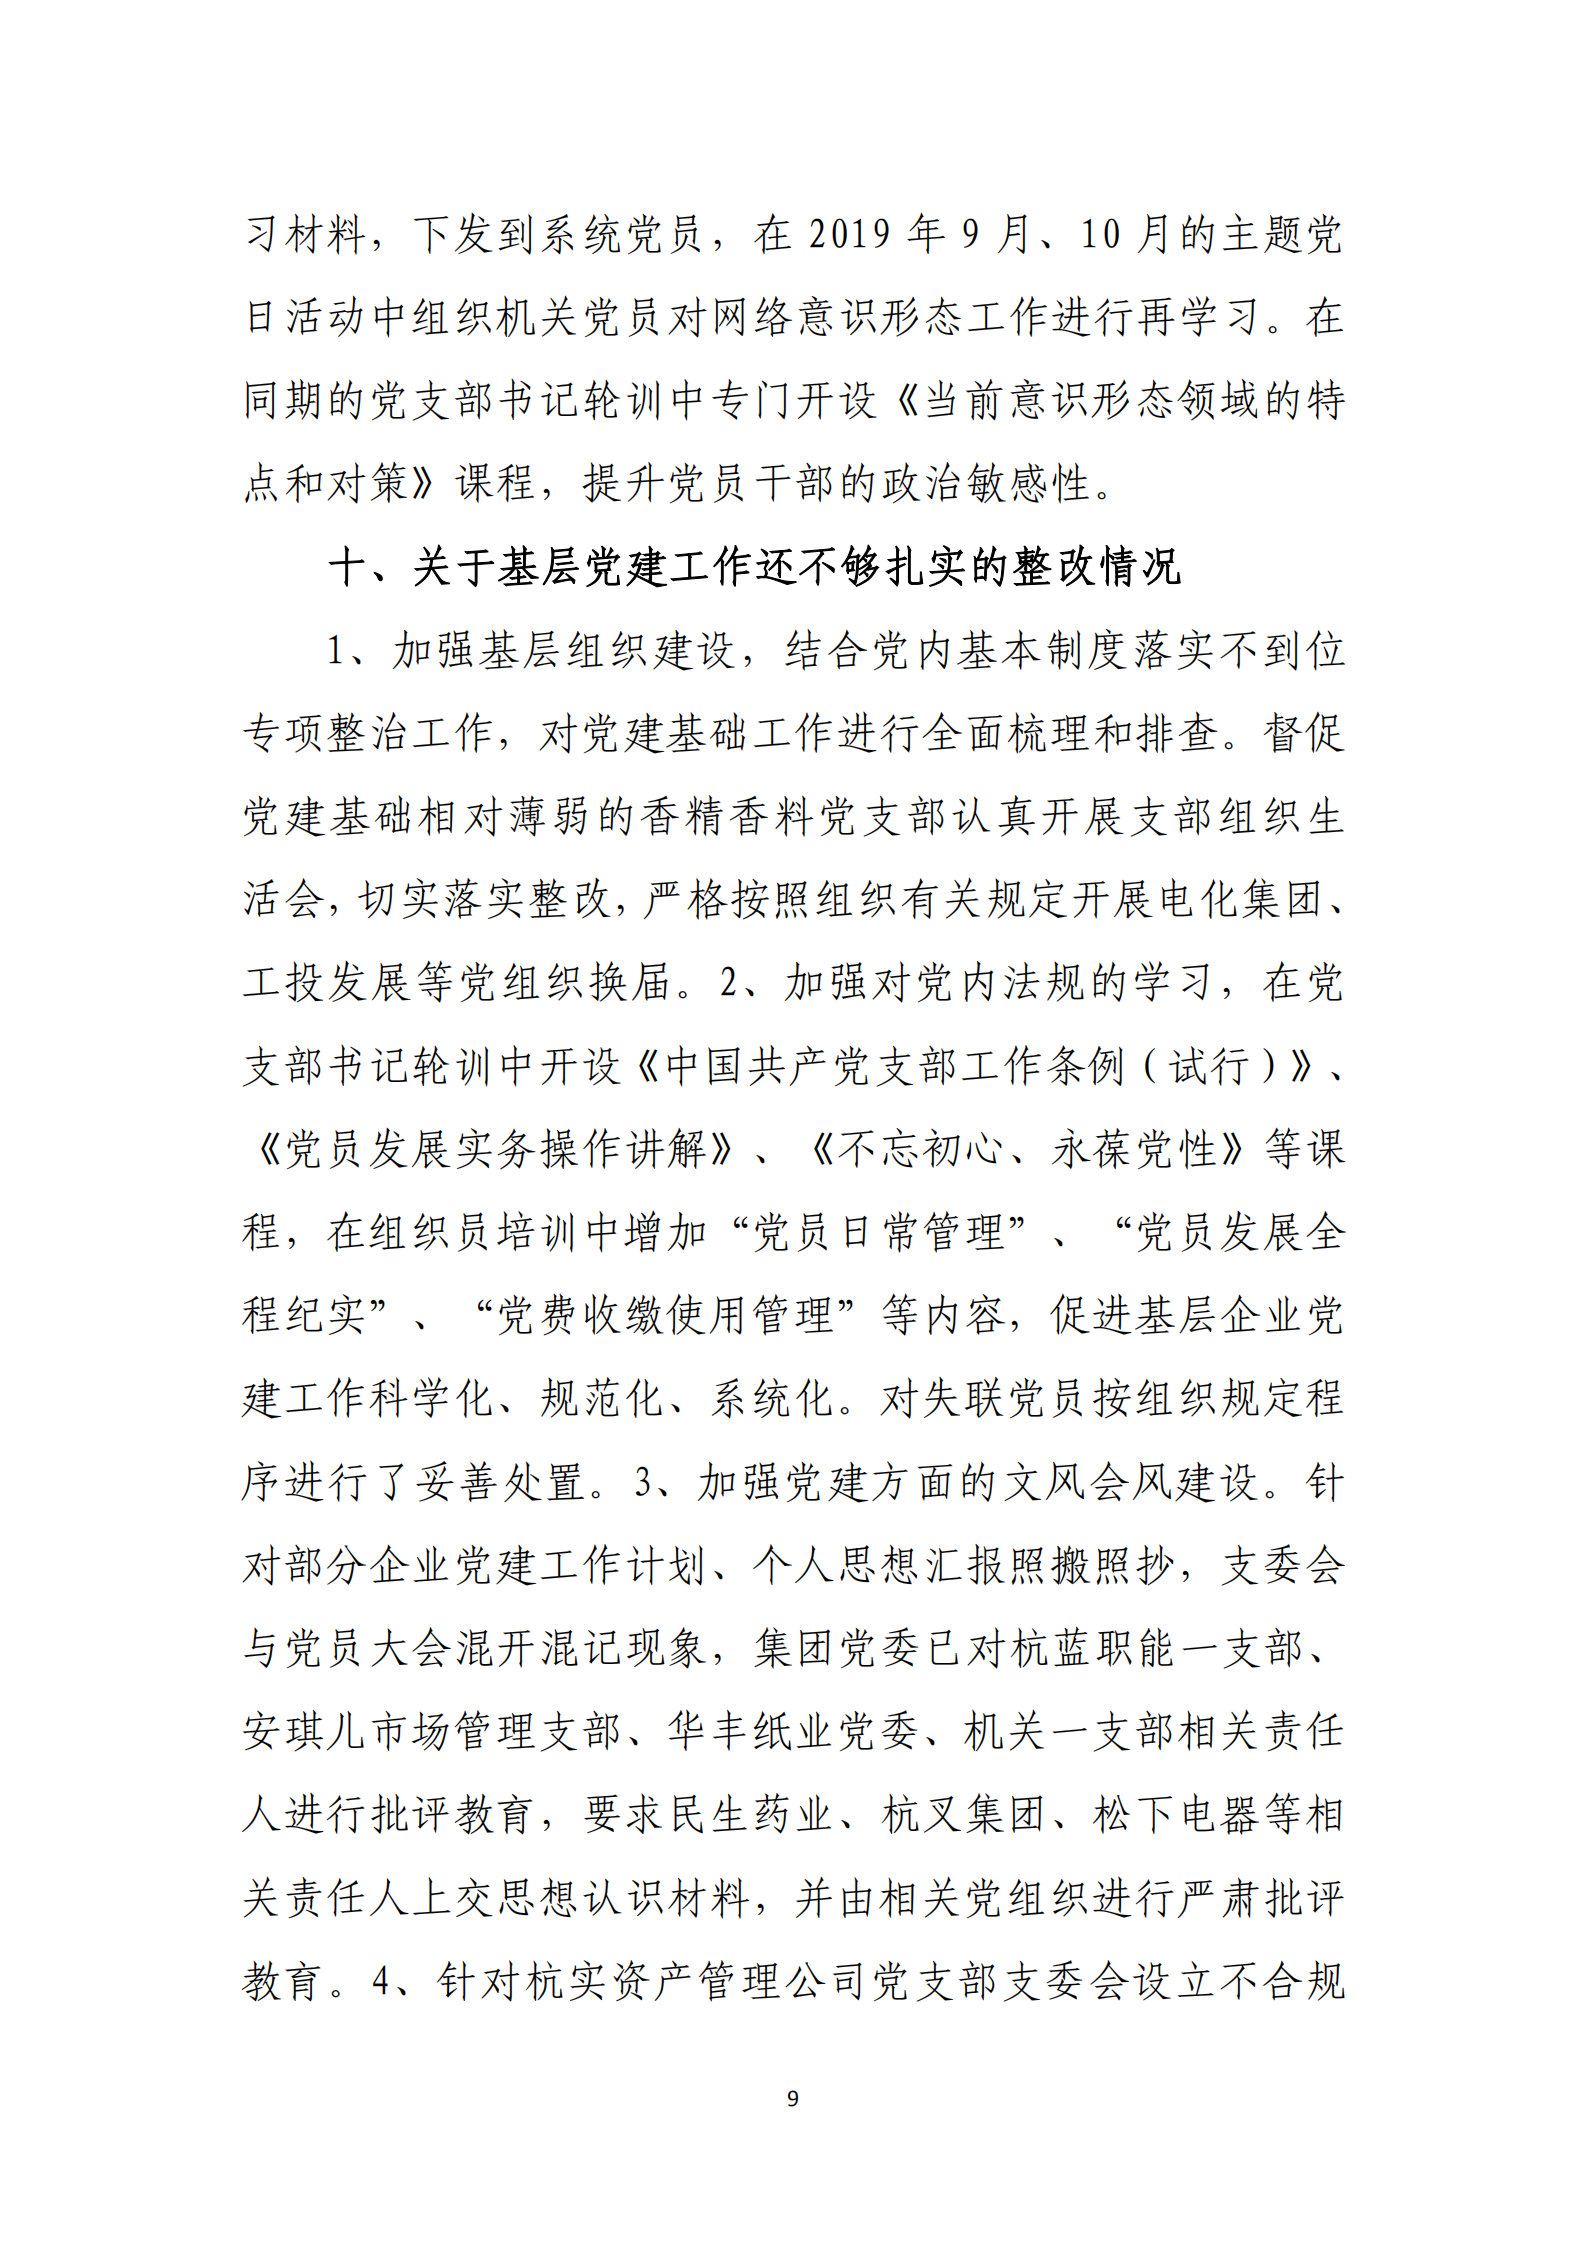 乐虎国际游戏官网党委关于巡察整改情况的通报_08.png